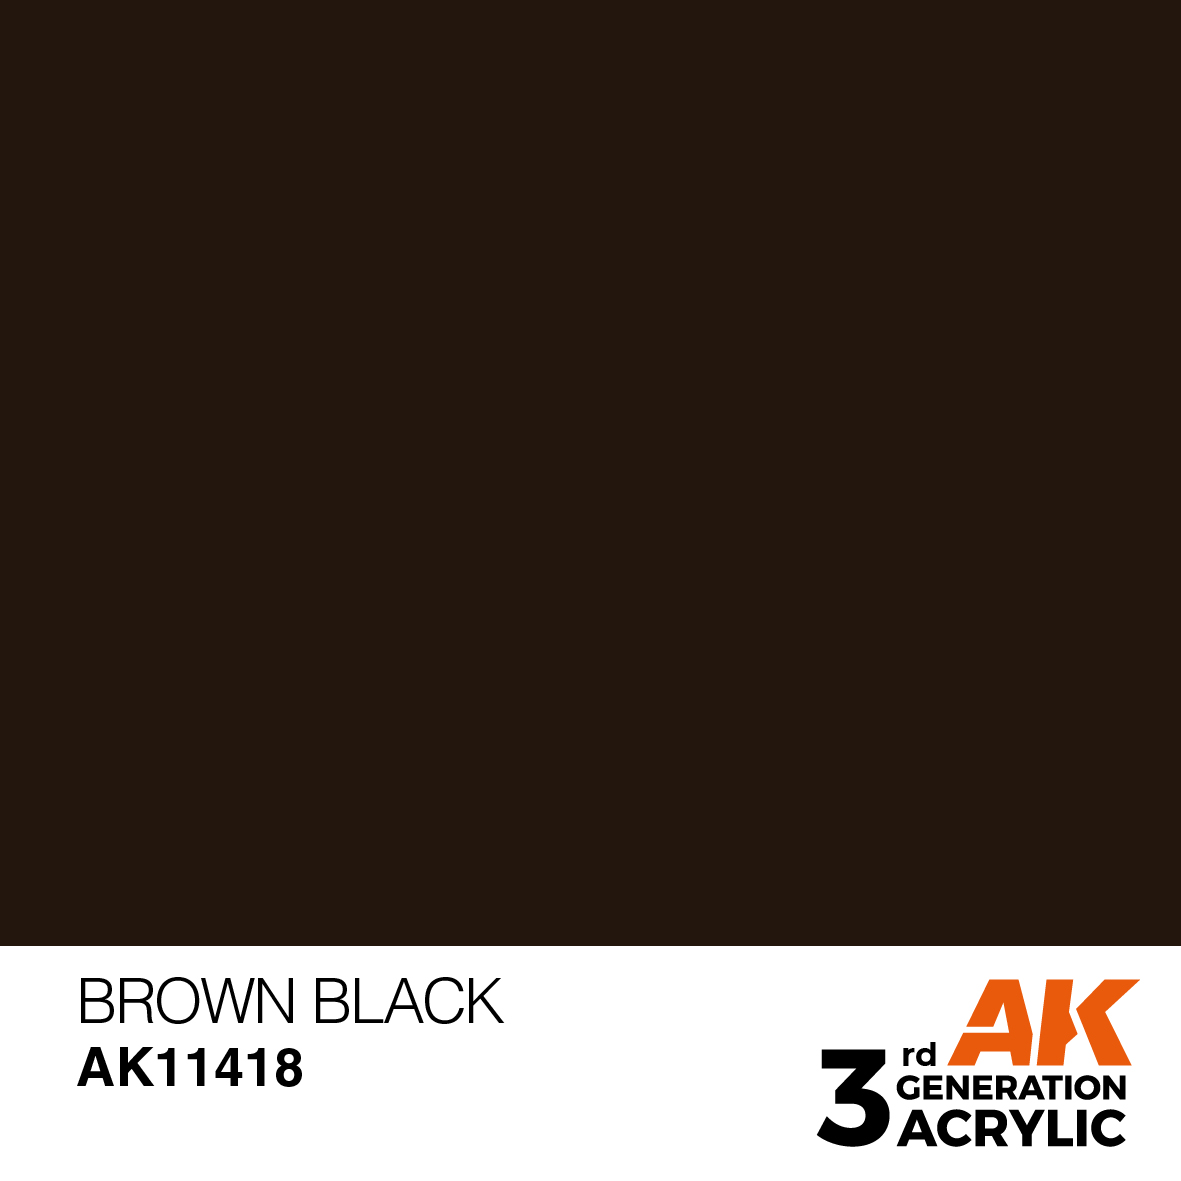 BROWN BLACK – FIGURES